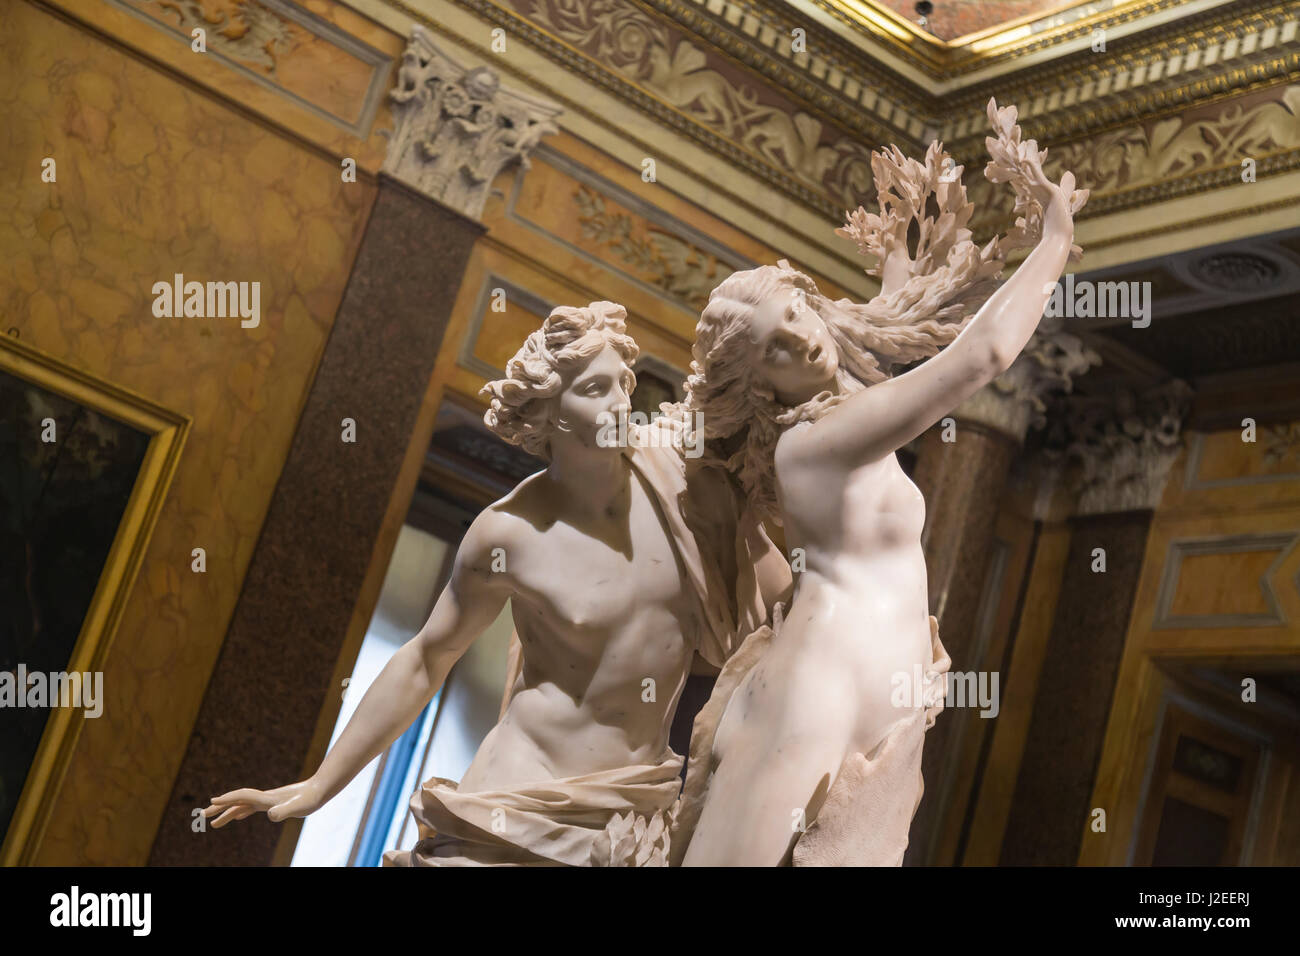 Italien, Rom. Skulptur von Apollo und Daphne, Darstellung den Höhepunkt ihrer Geschichte in Ovids Metamorphosen. Die Skulptur wurde von Gian Lorenzo Bernini in der Galleria Borghese erstellt. (Nur zur redaktionellen Verwendung) Stockfoto